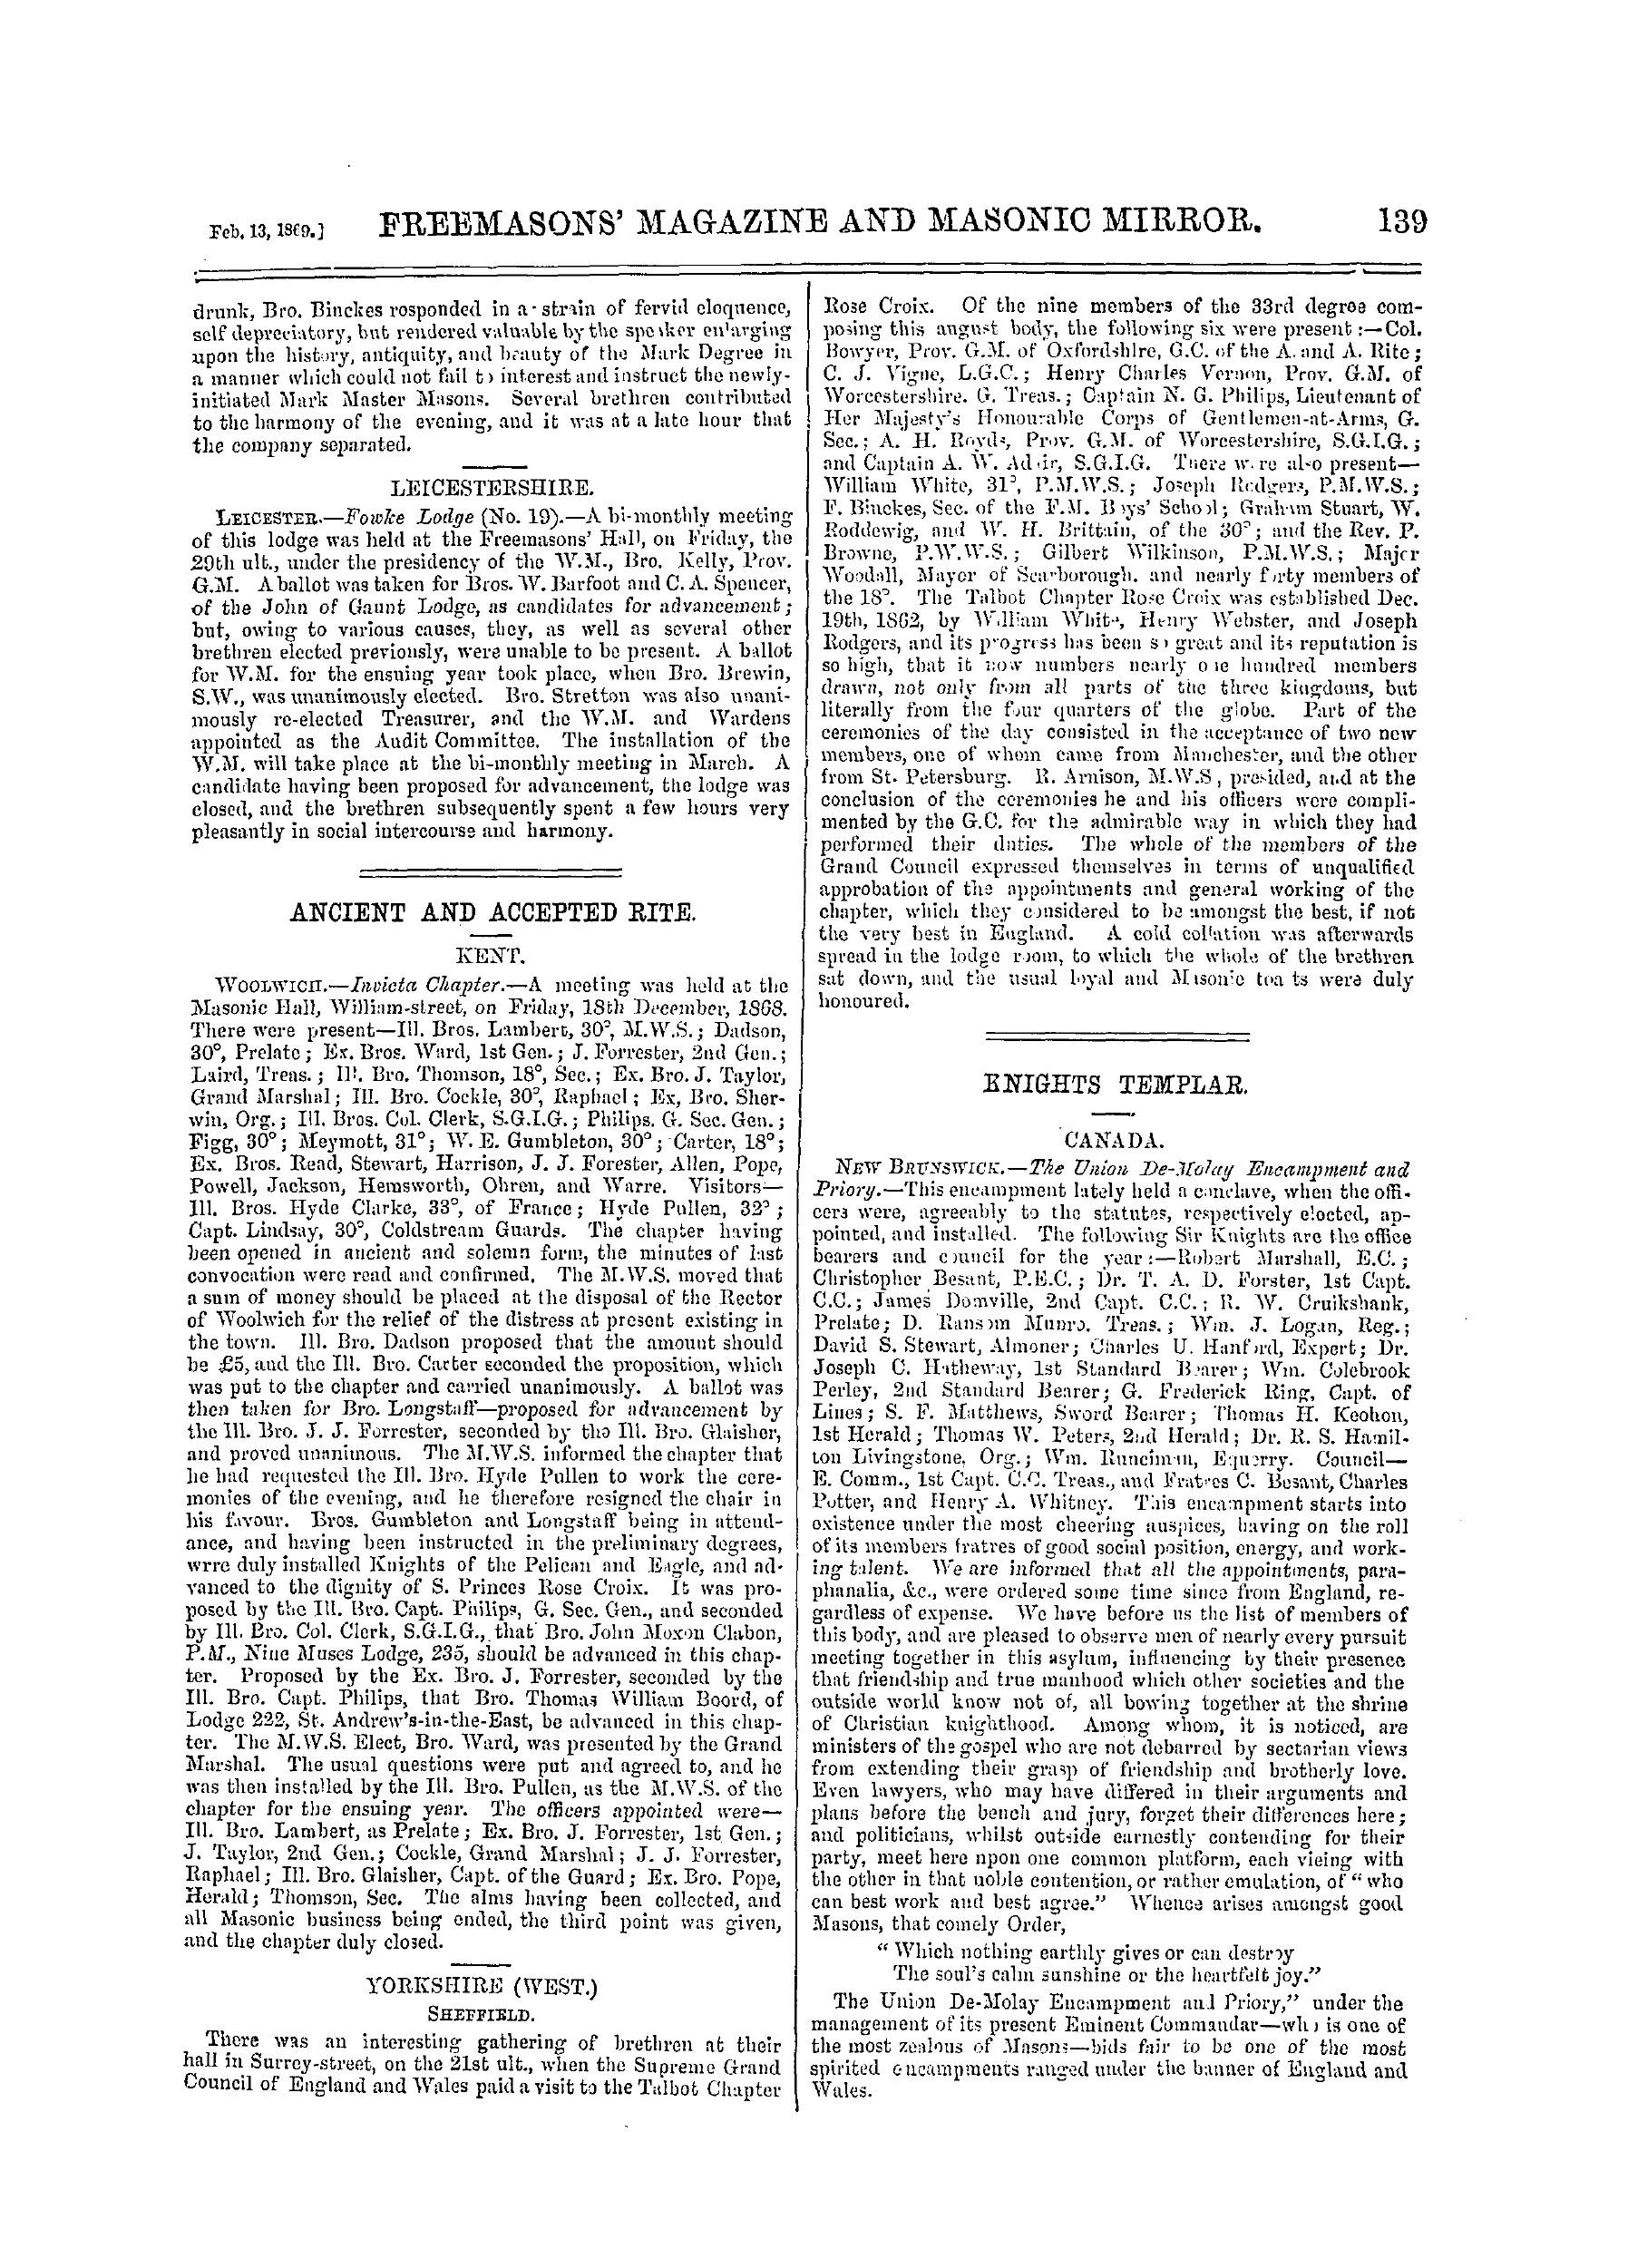 The Freemasons' Monthly Magazine: 1869-02-13: 19